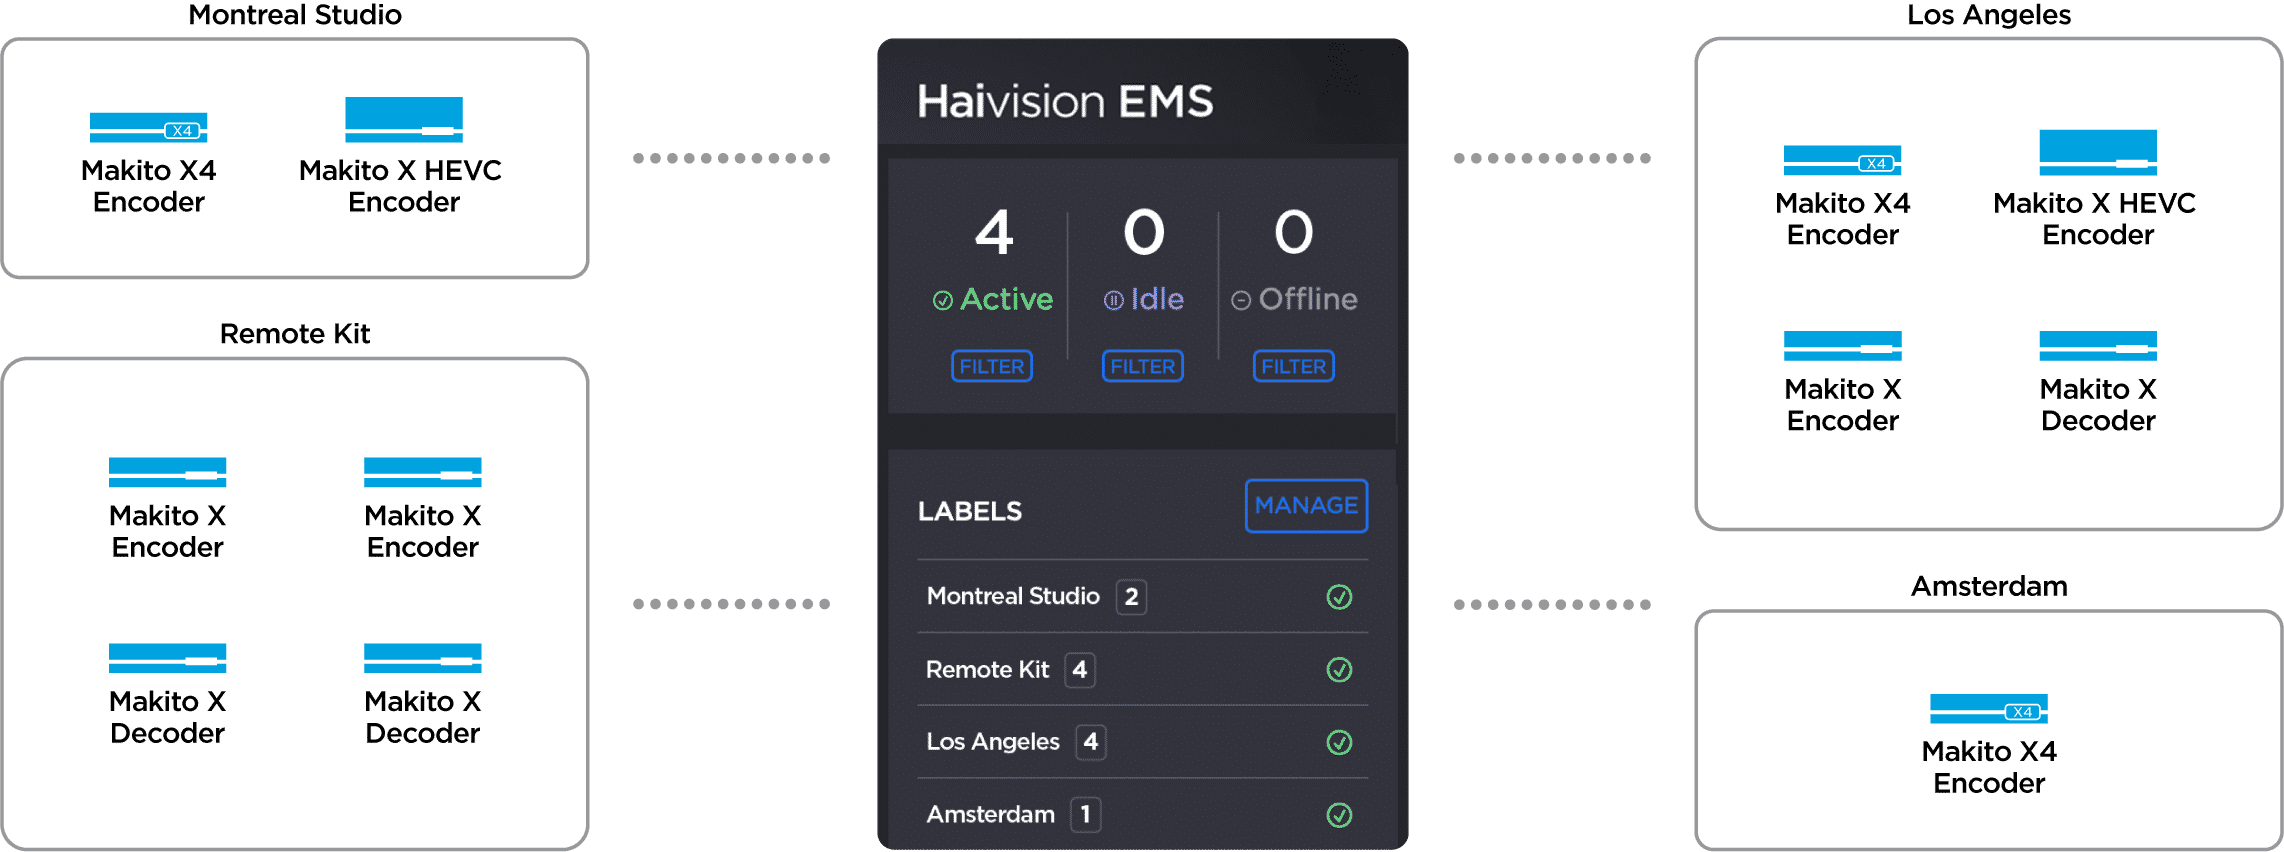 Haivision EMS Diagram